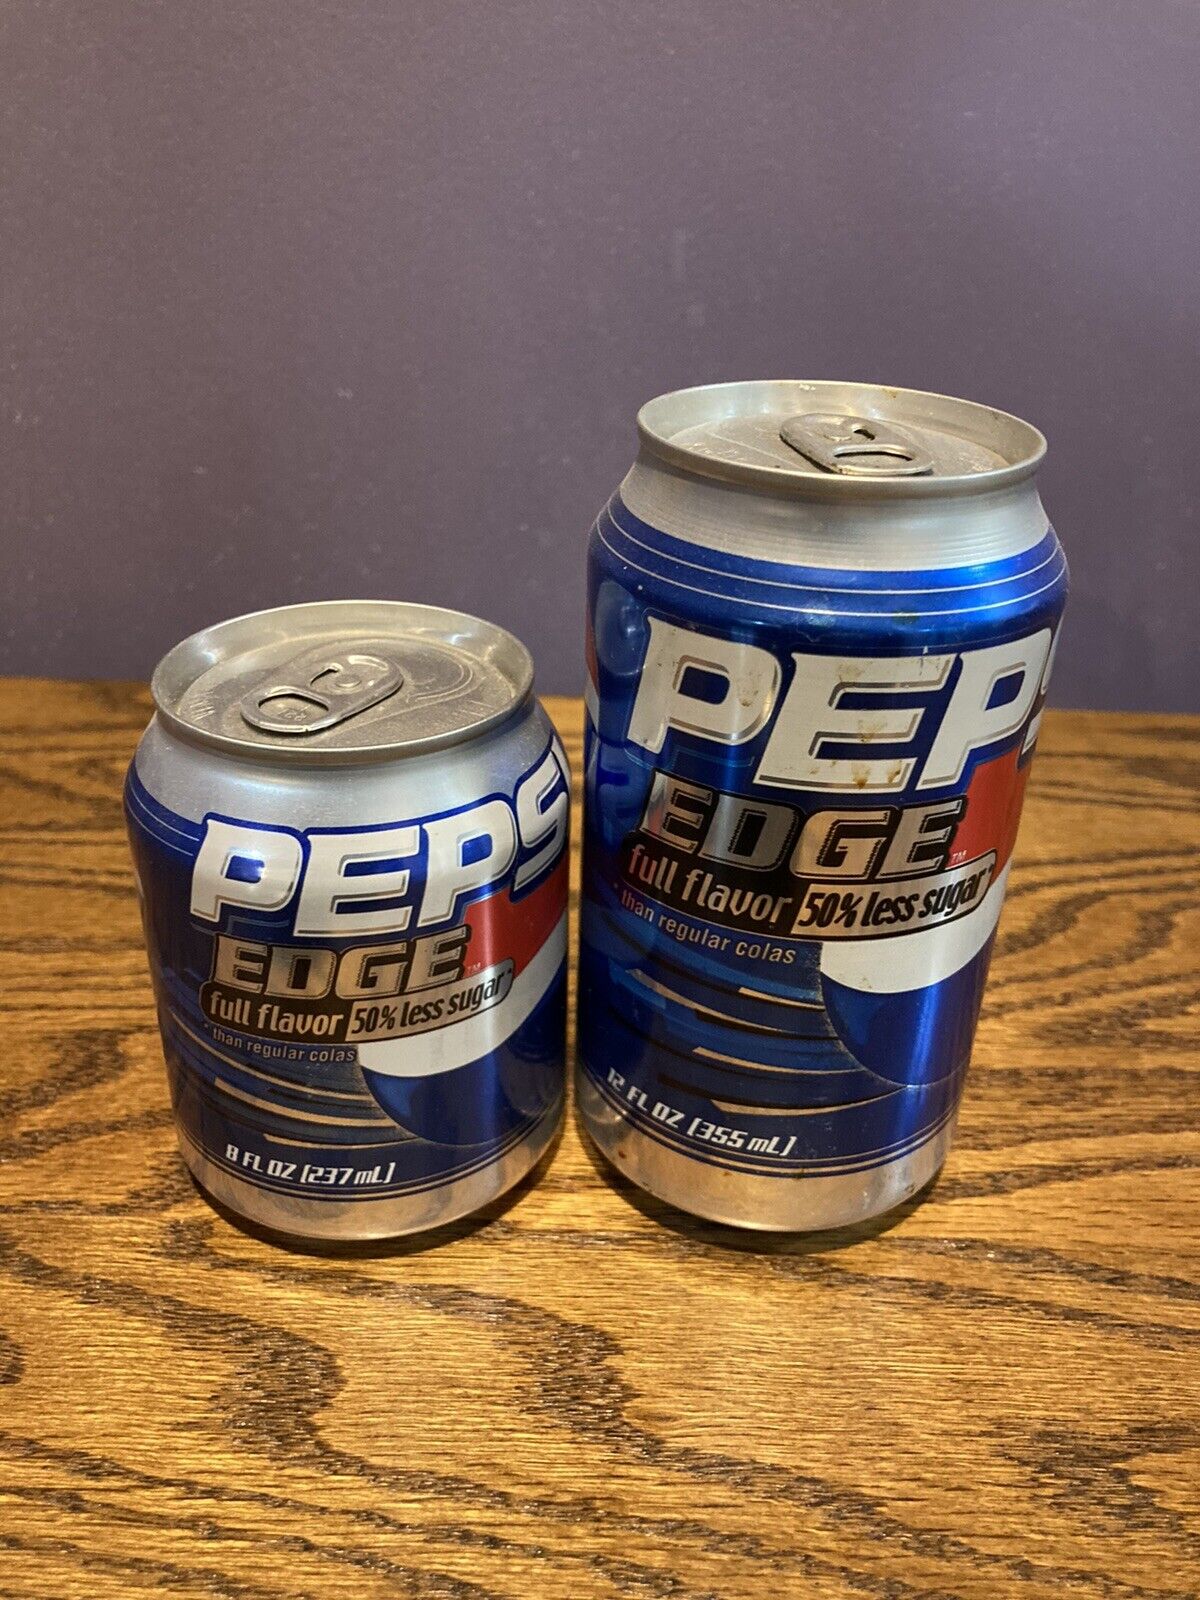 Pepsi Edge Soda Two Cans Rare